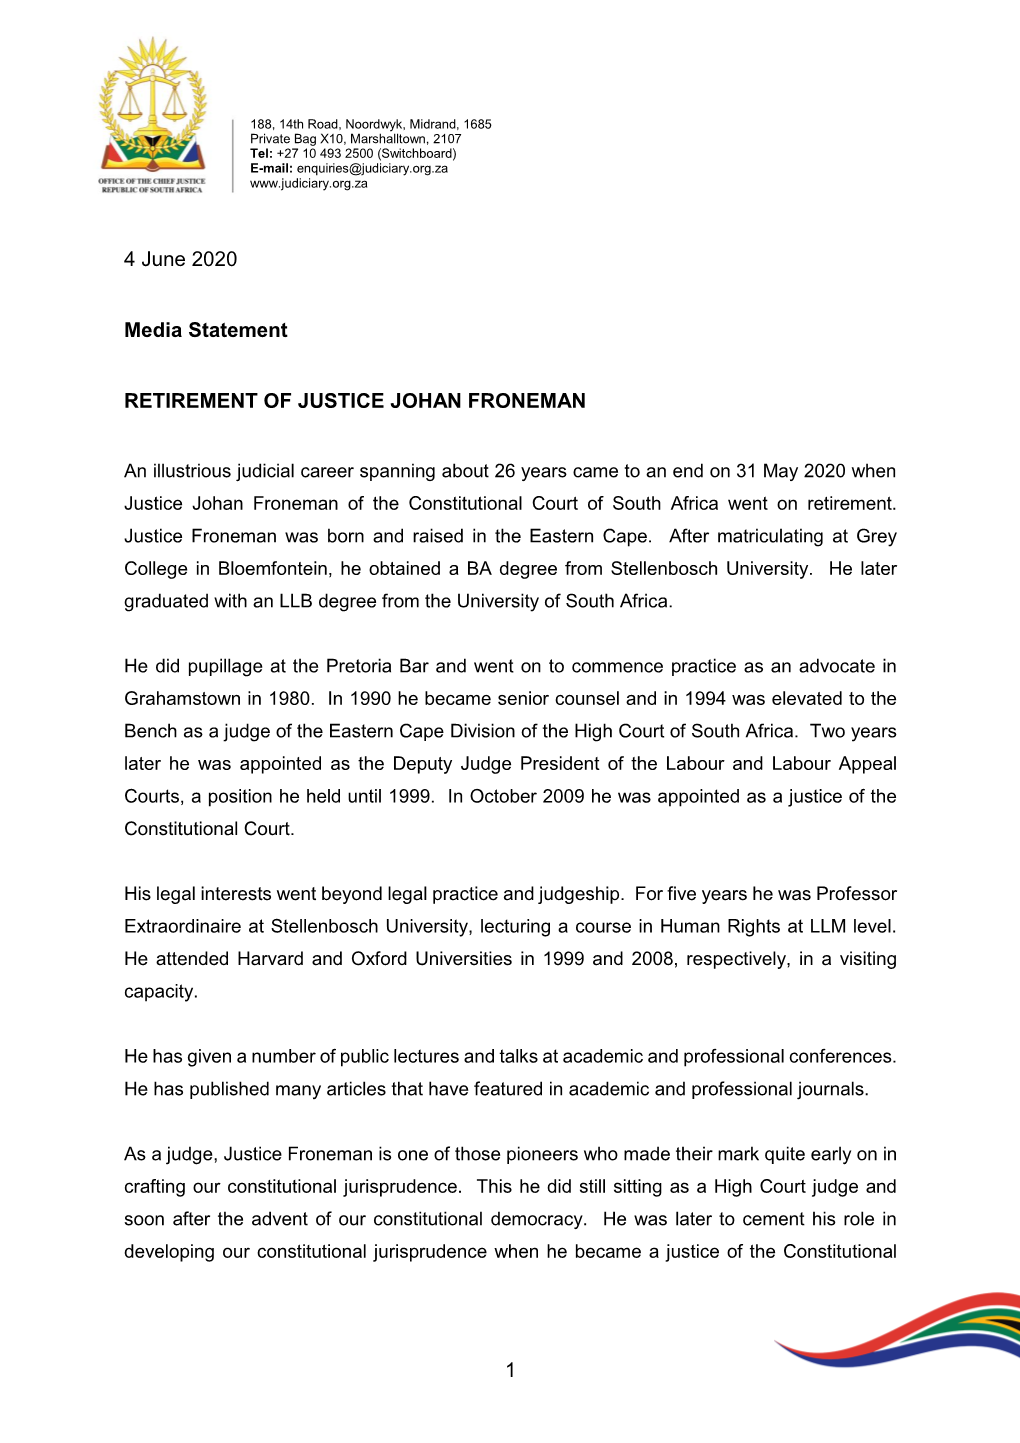 Retirement of Justice Froneman